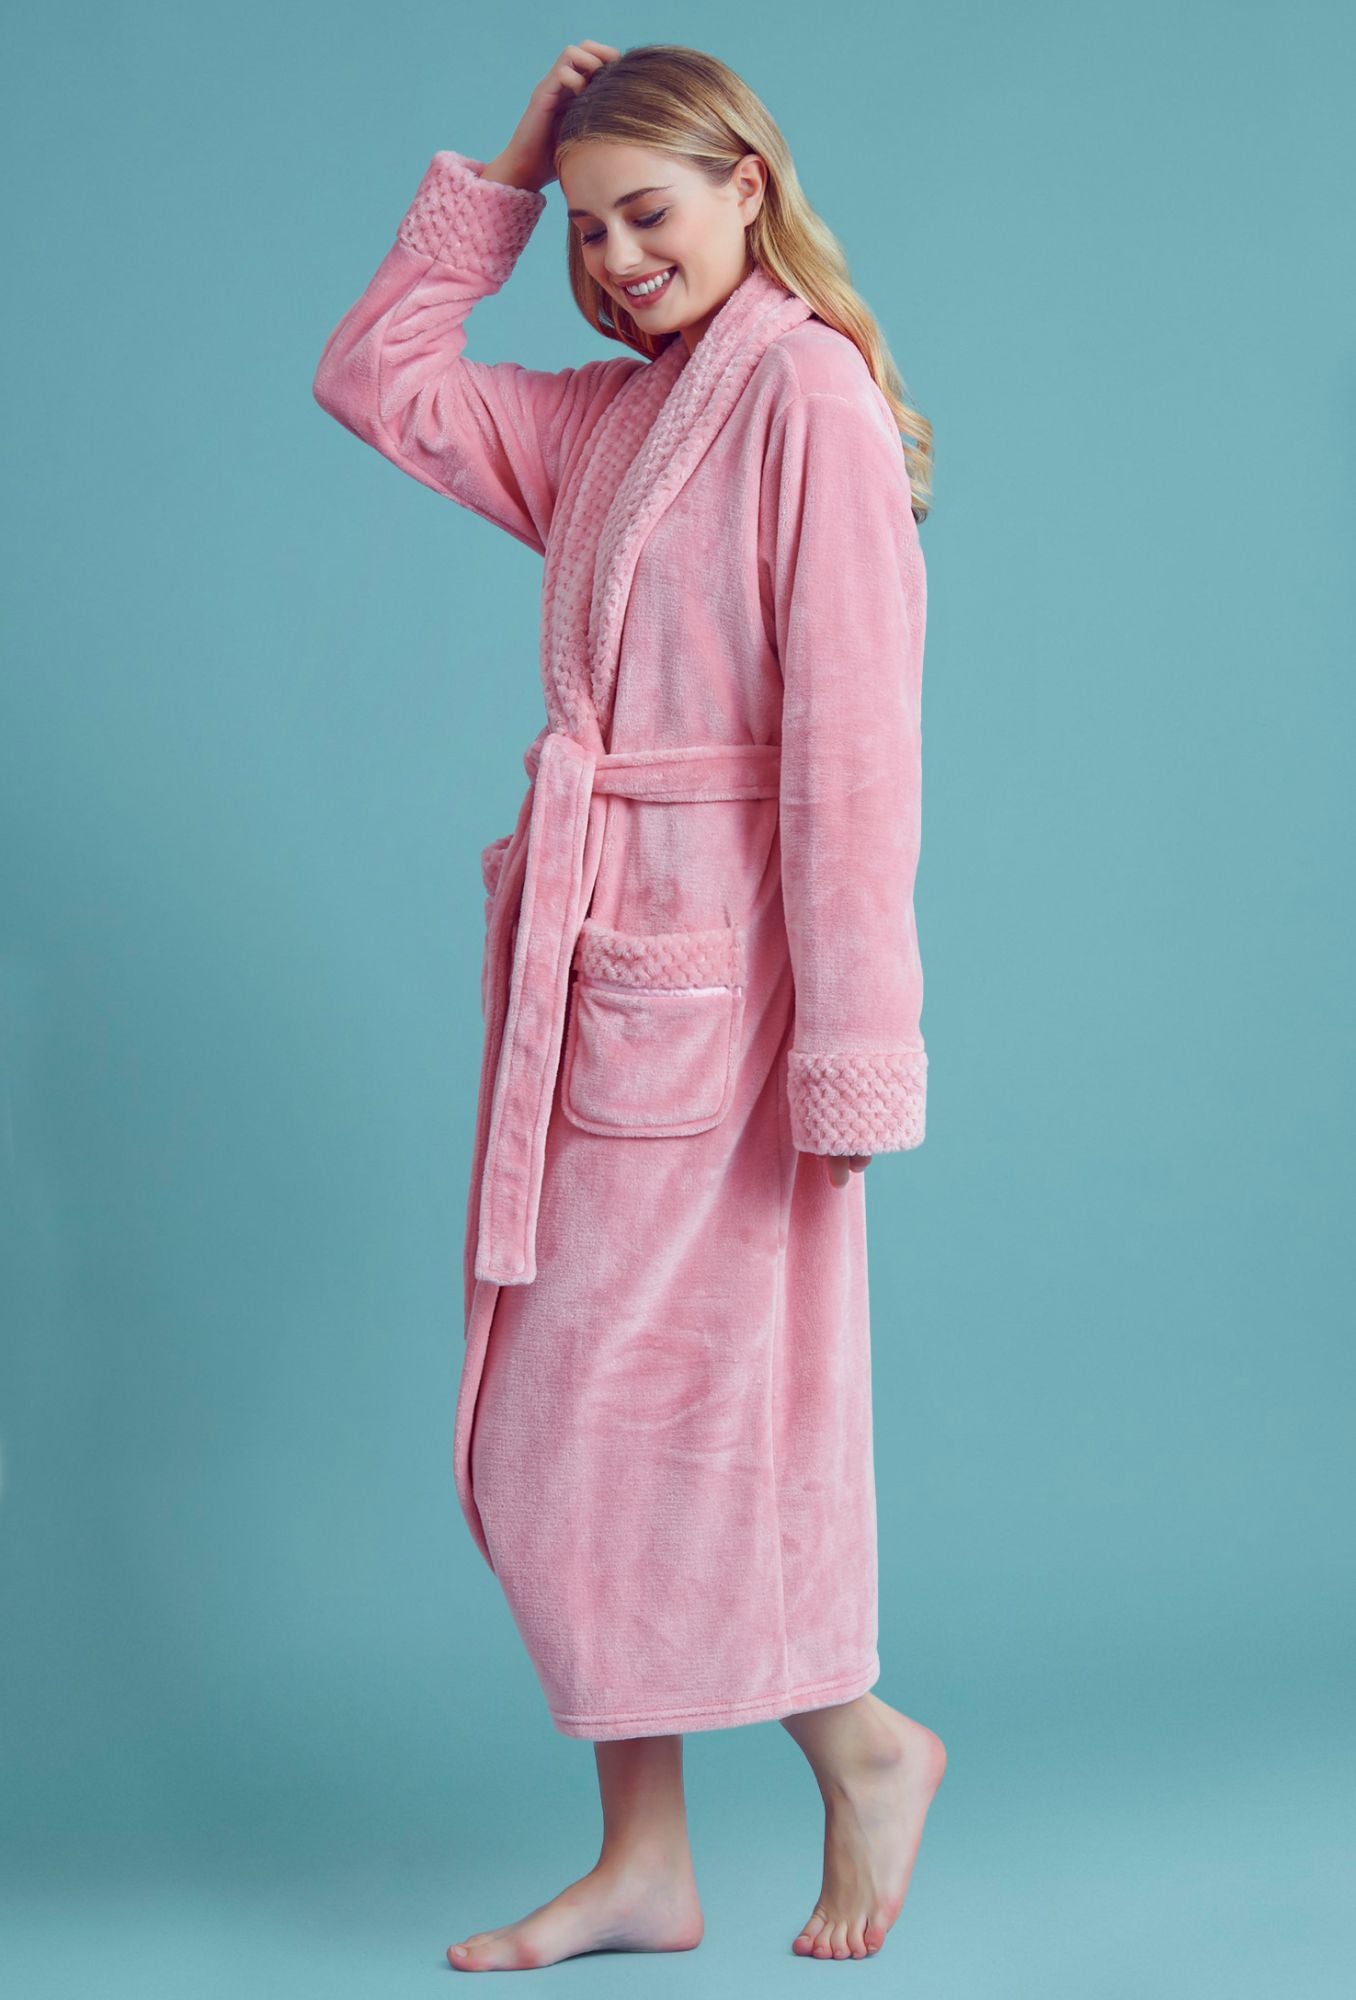 Women?s Comfortable Fleece Bathrobe ? Plush Soft Robe for Women – towelnrobe